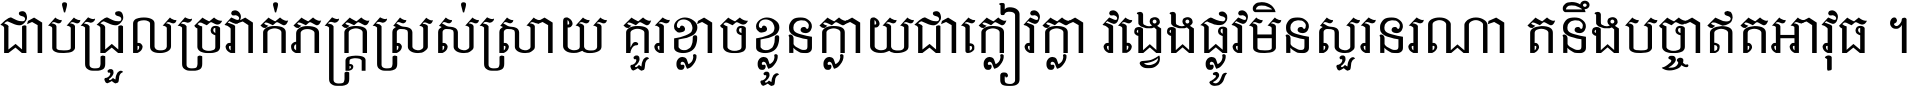 Khmer Chhay Text 5